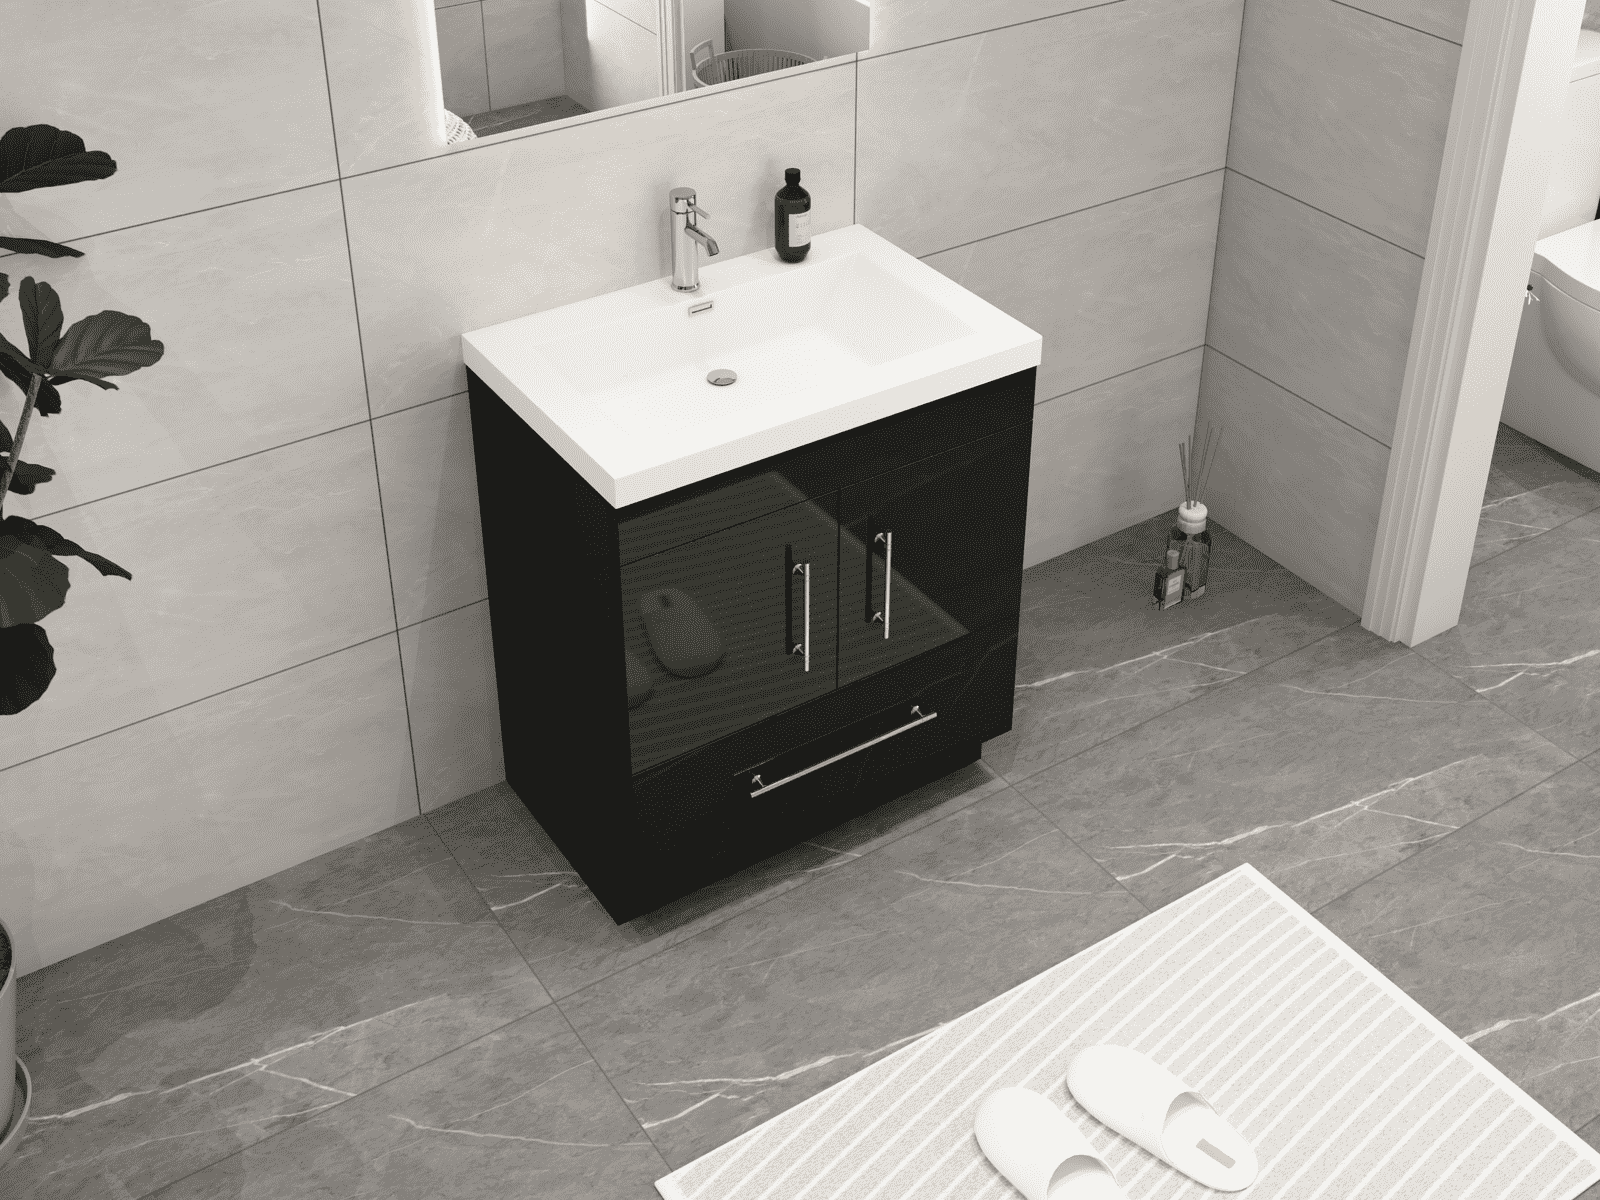 Elsa 30" Freestanding Bathroom Vanity with Reinforced Acrylic Sink in Gloss Black | Better Vanity